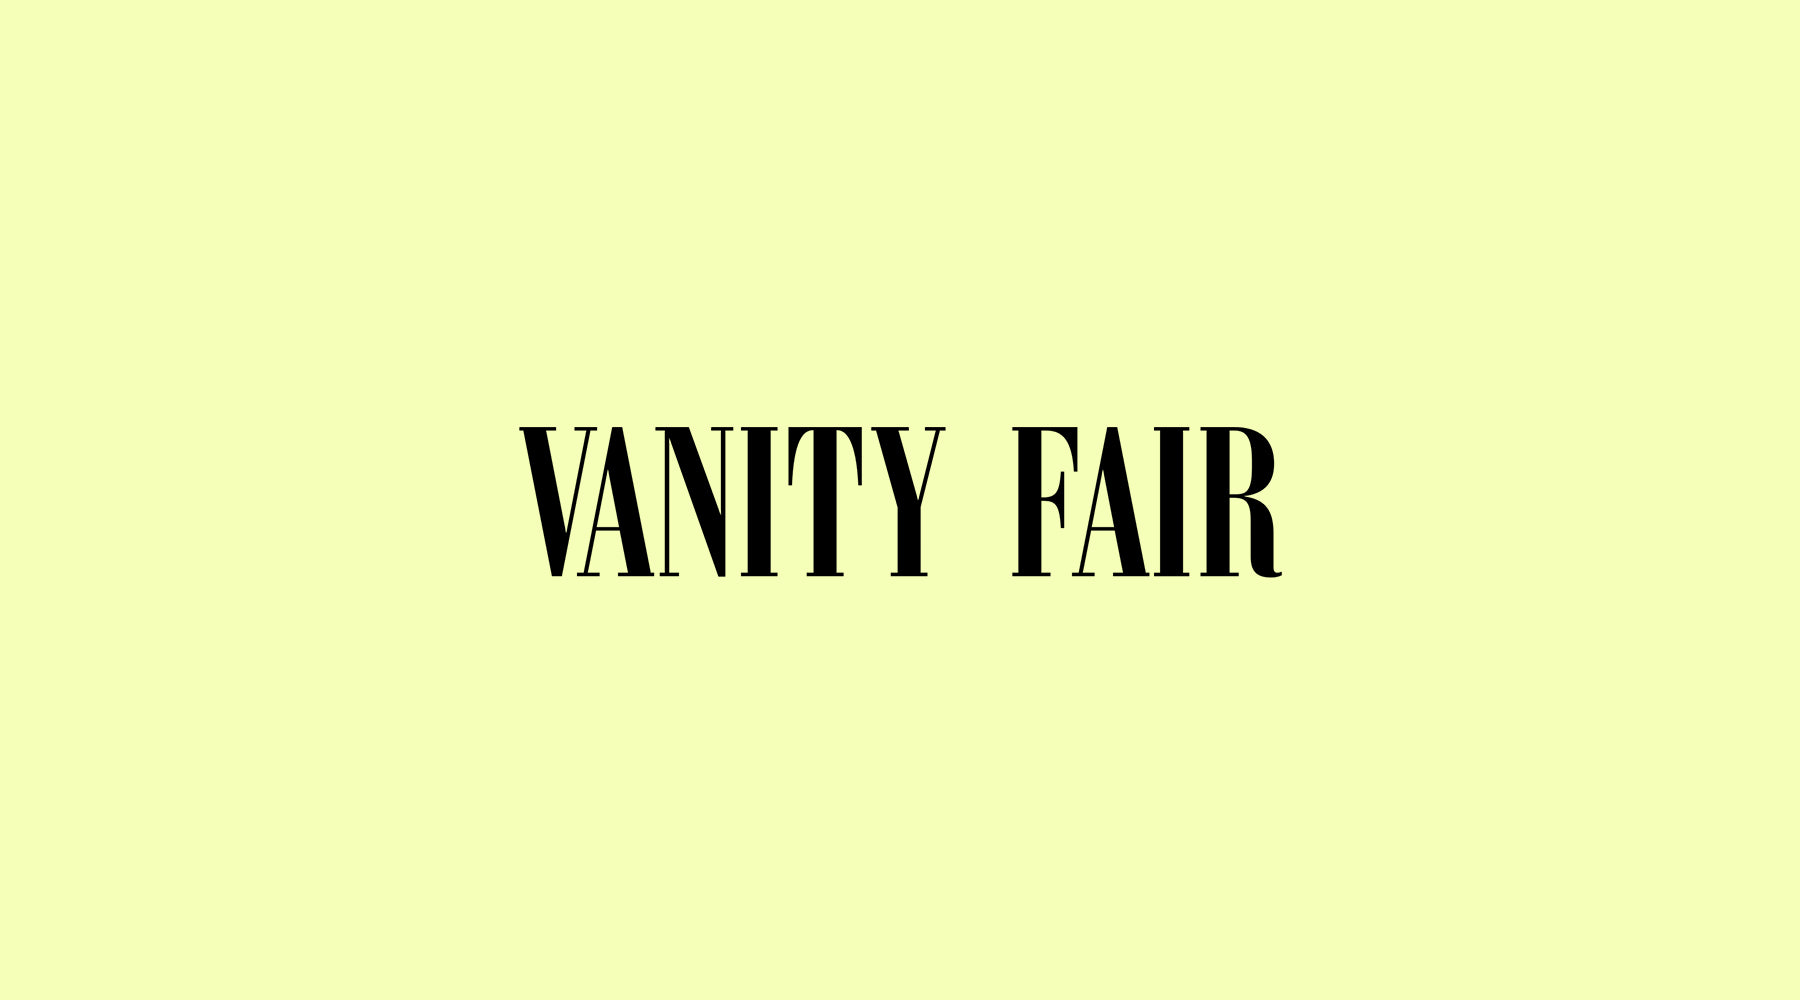 Vanity Fair - Giornata della Terra 2022: tutte le iniziative e i marchi di bellezza Planet-friendly